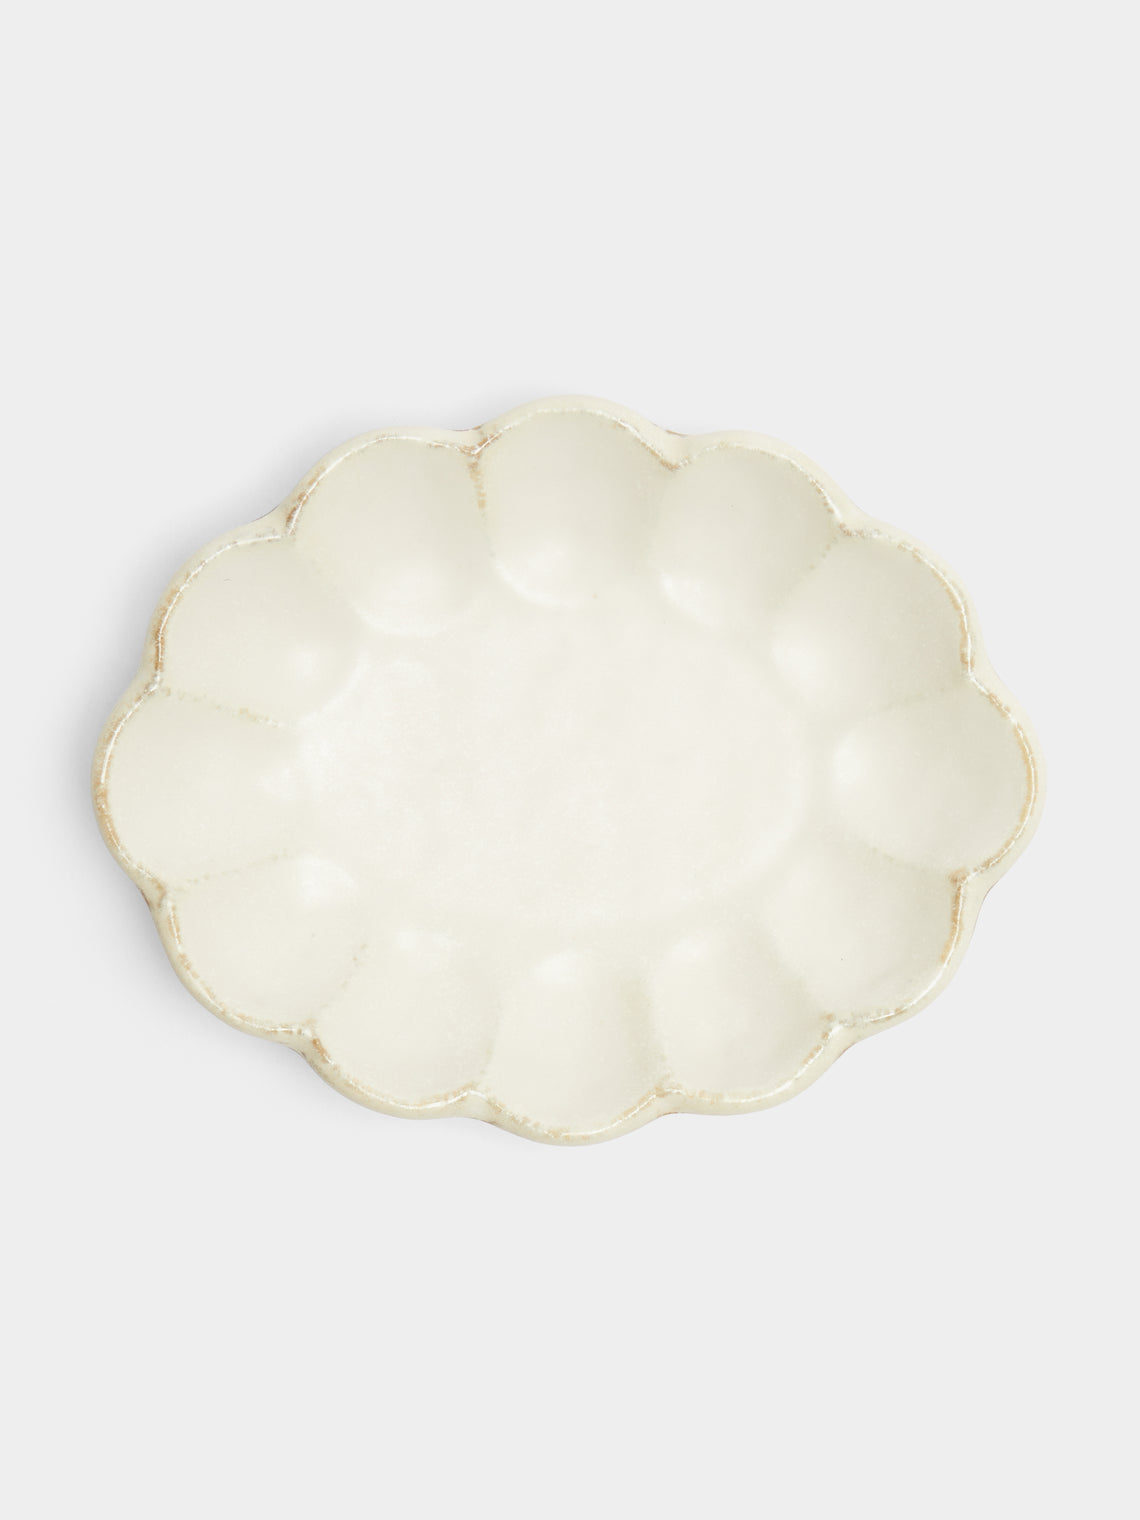 Kaneko Kohyo - Rinka Ceramic Serving Plate - White - ABASK - 